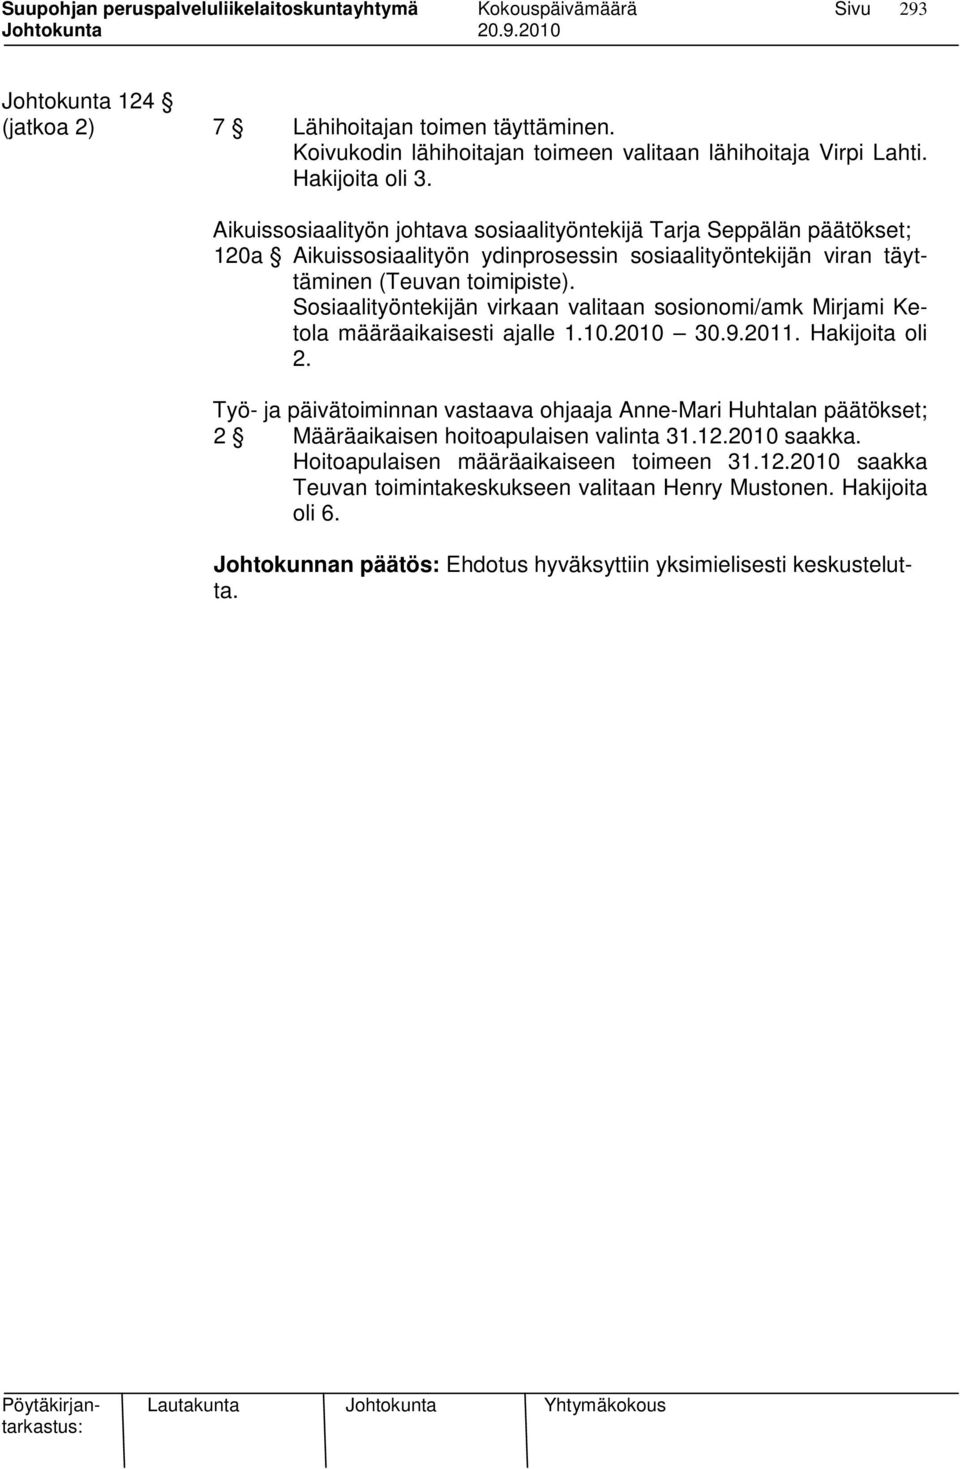 Sosiaalityöntekijän virkaan valitaan sosionomi/amk Mirjami Ketola määräaikaisesti ajalle 1.10.2010 30.9.2011. Hakijoita oli 2.